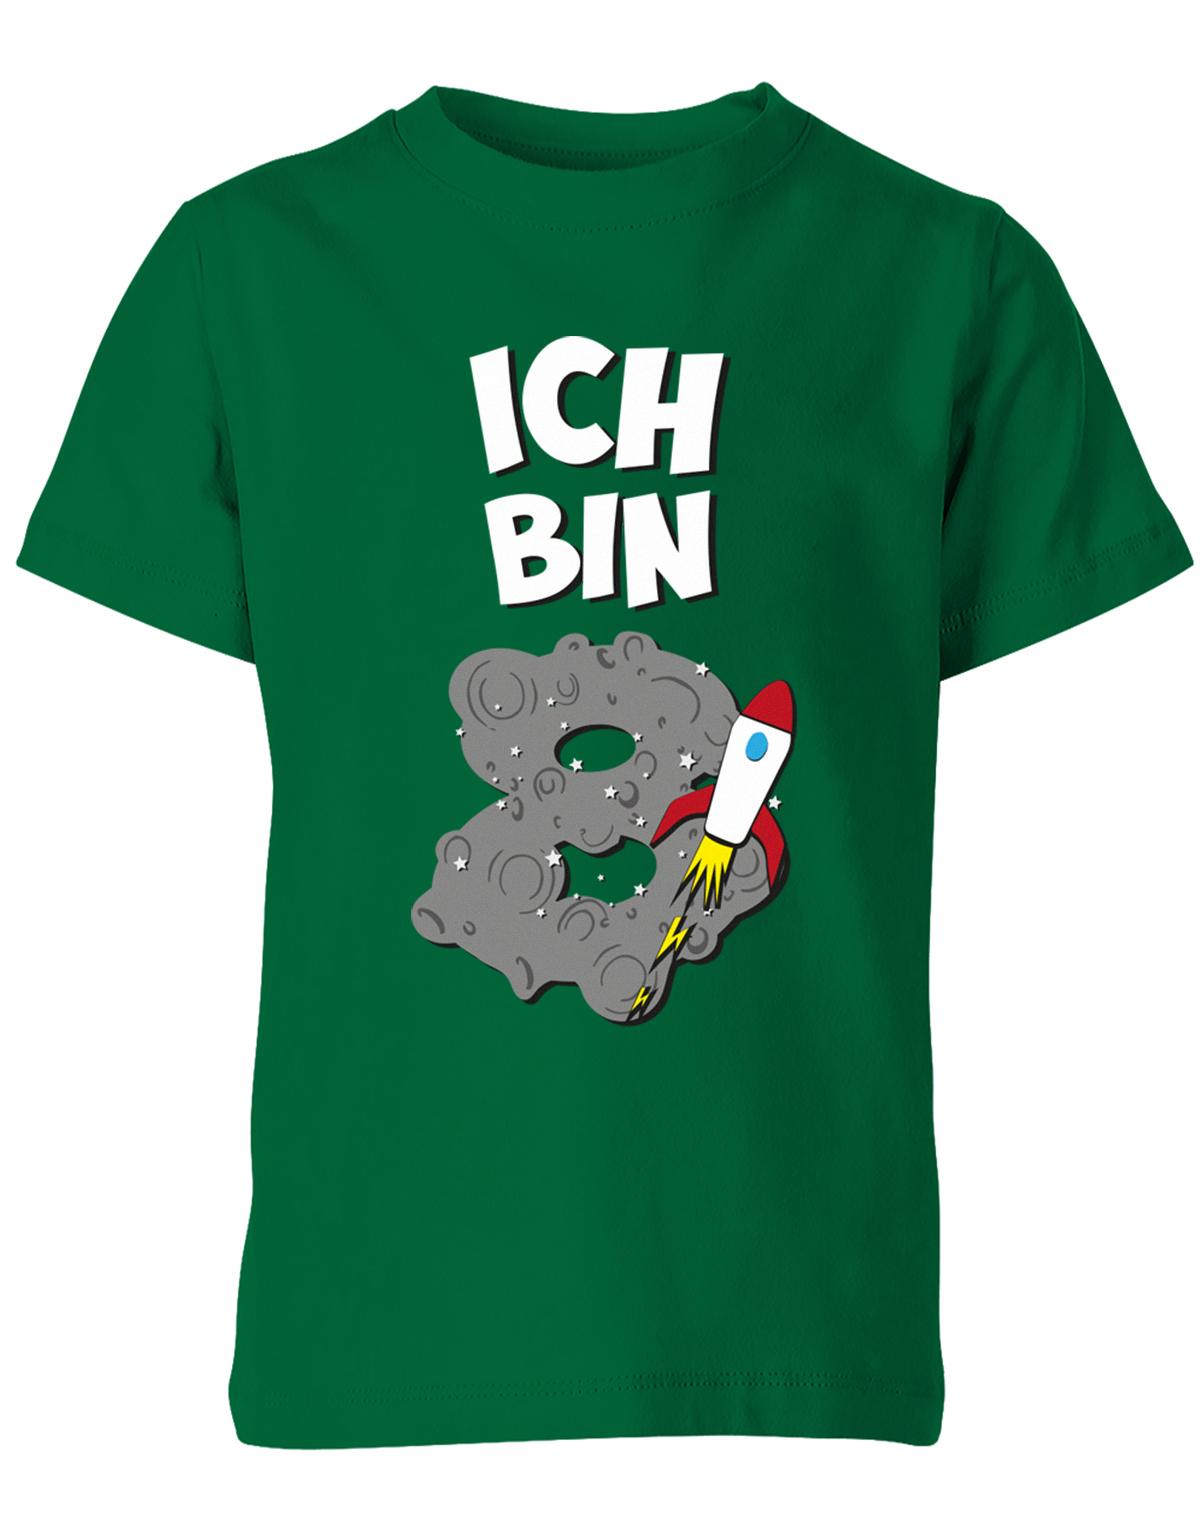 ich-bin-8-weltraum-rakete-planet-geburtstag-kinder-shirt-gruen